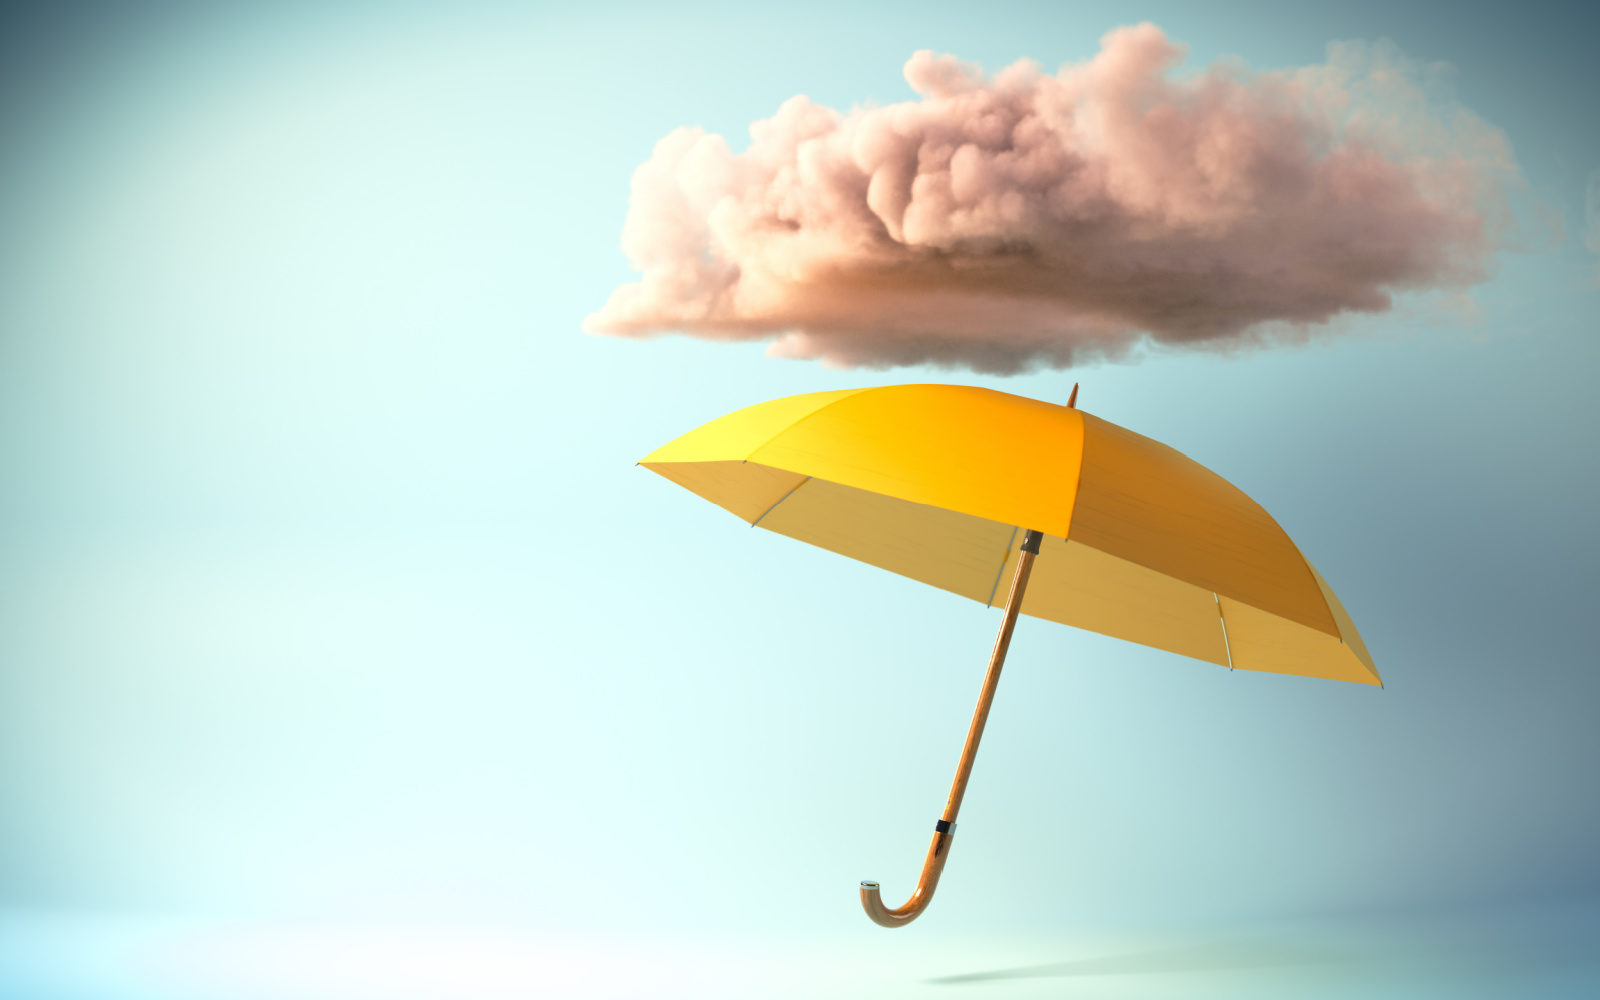 Small Business Umbrella Liability Insurance